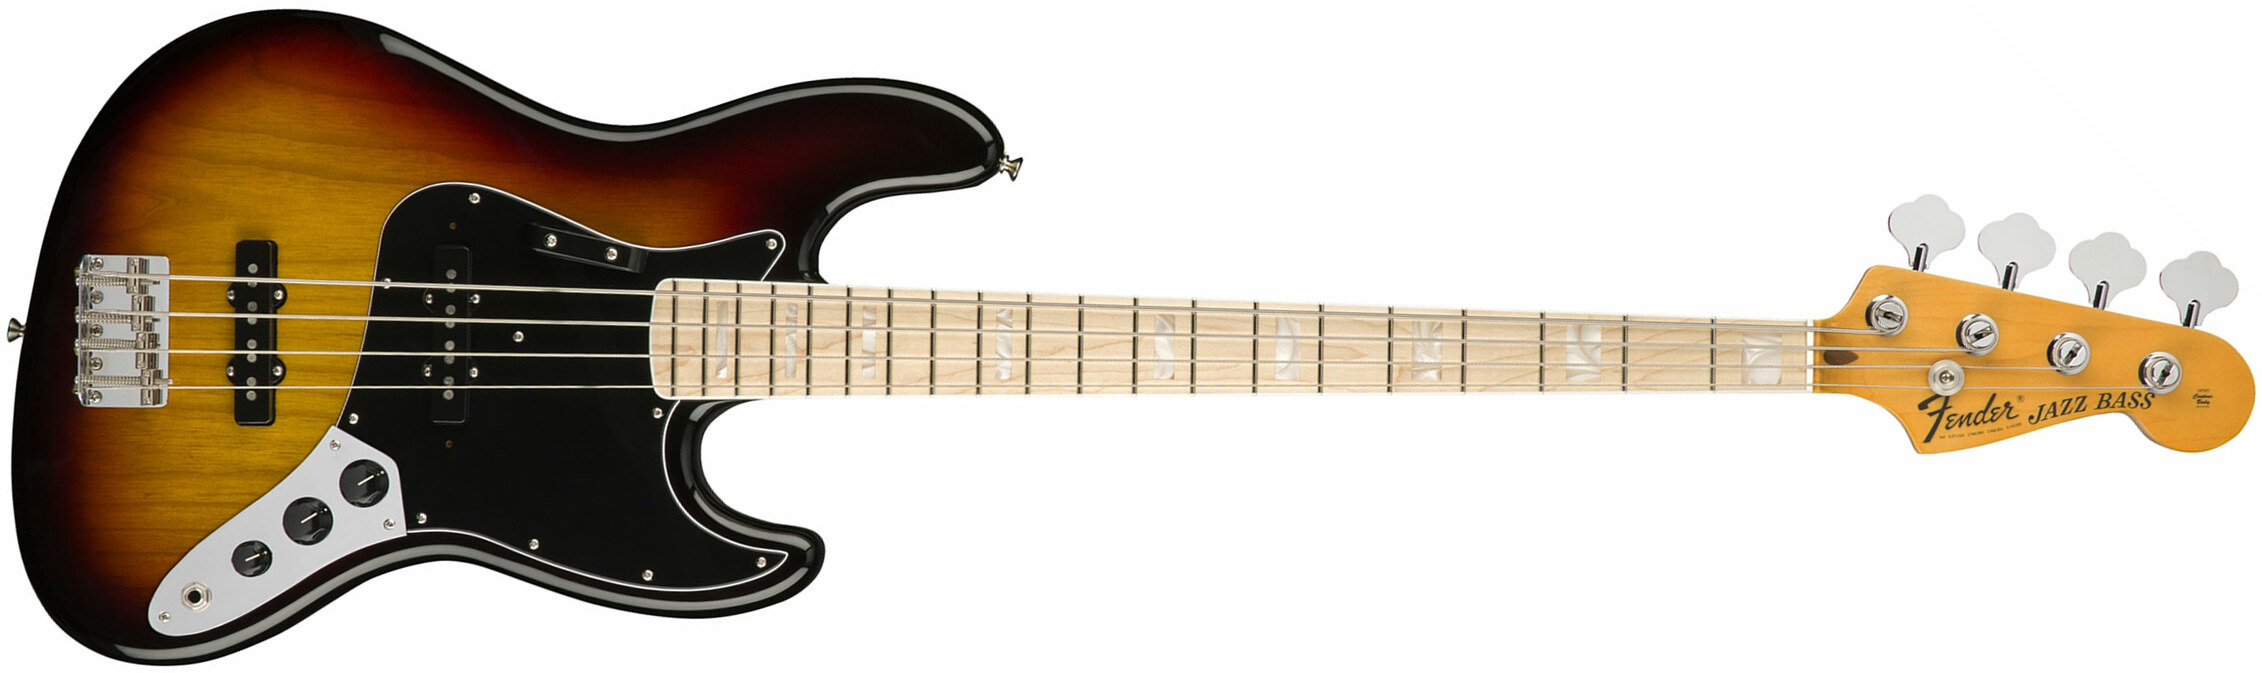 Fender Jazz Bass '70s American Original Usa Mn - 3-color Sunburst - Bajo eléctrico de cuerpo sólido - Main picture